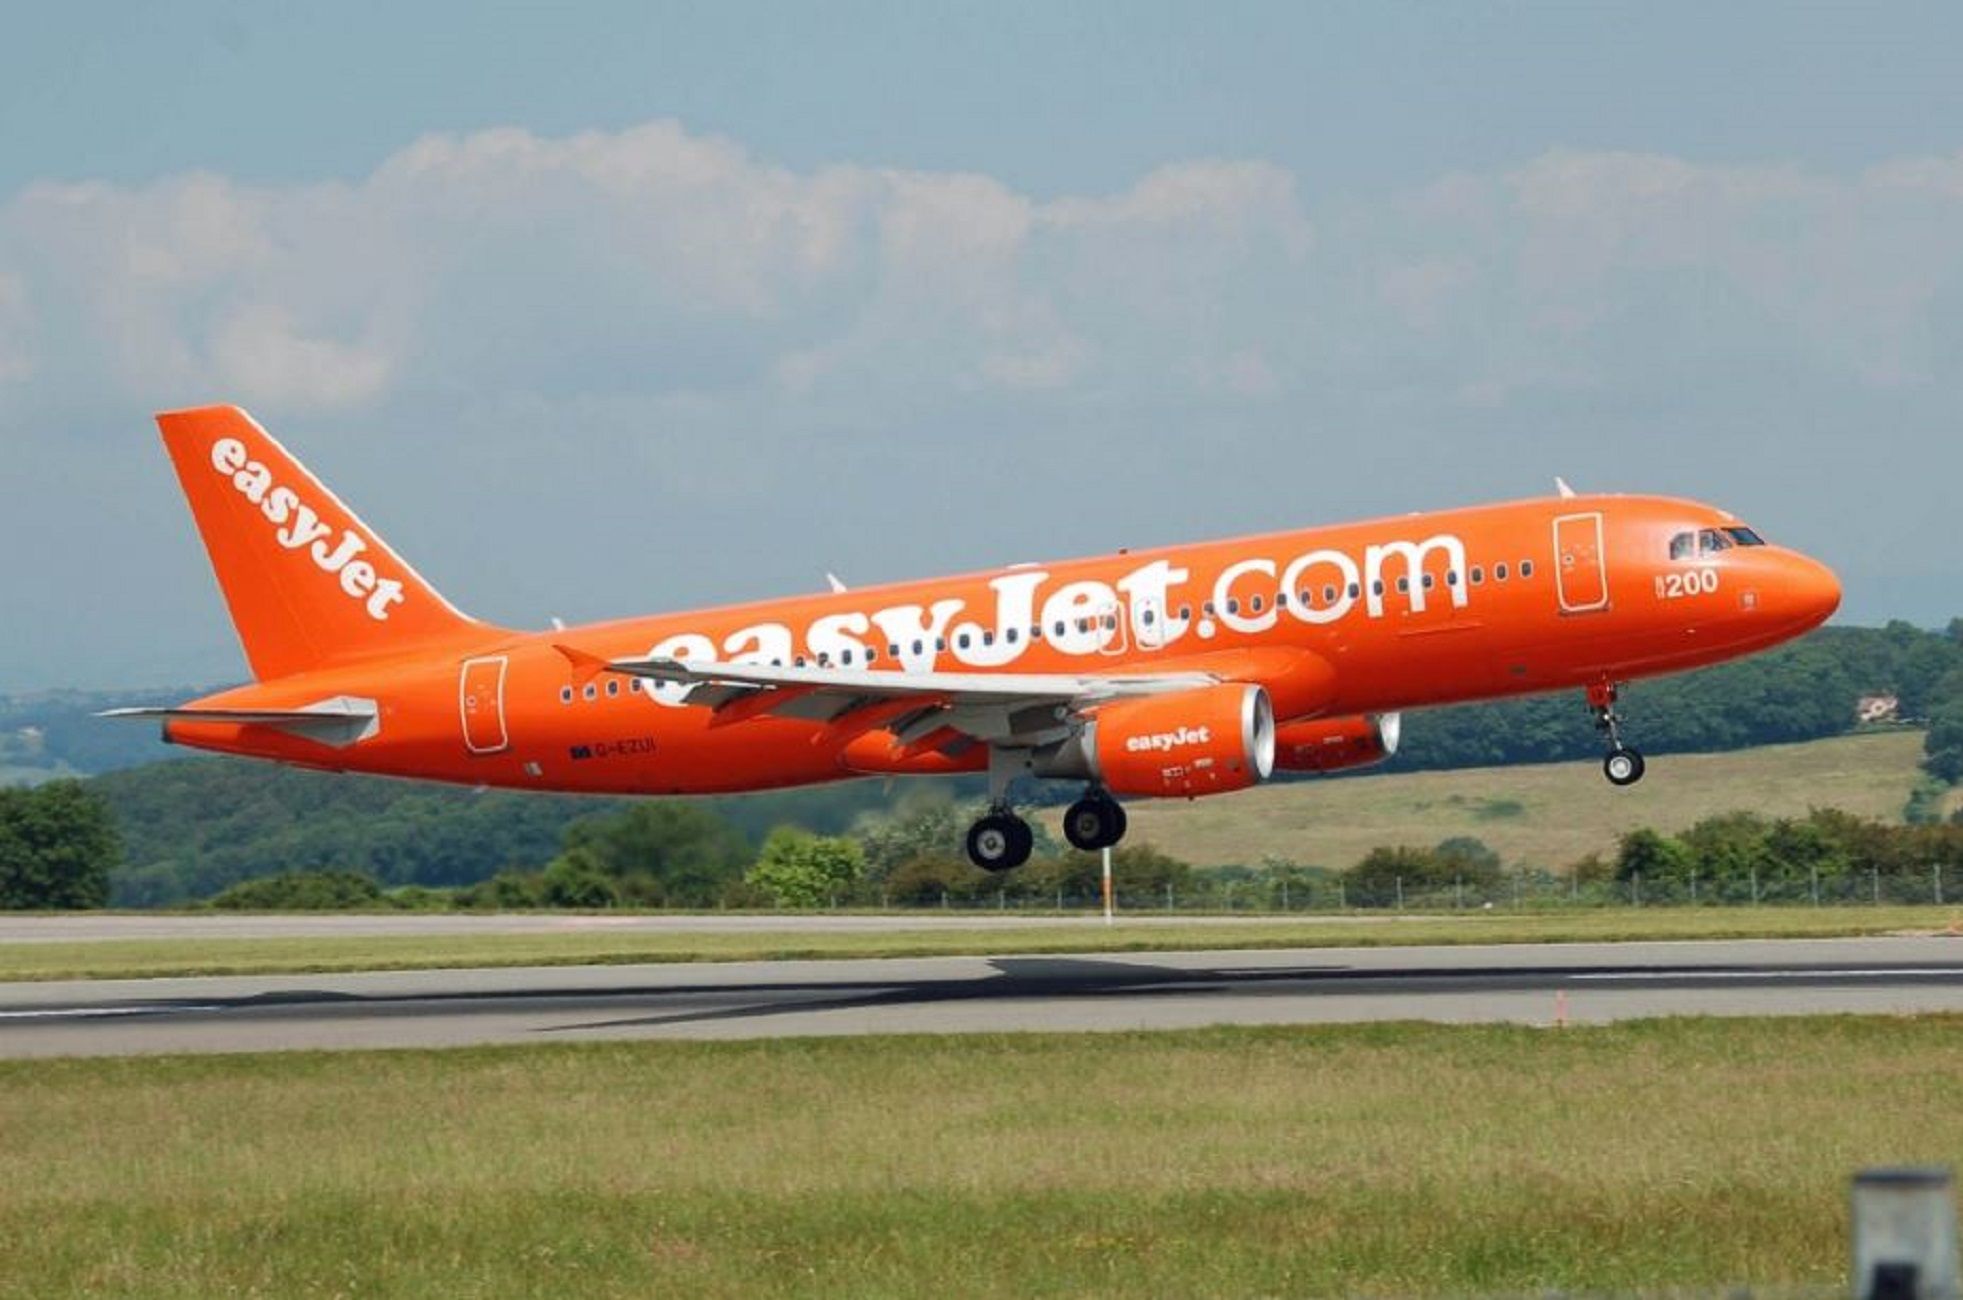 La vaga de pilots d'EasyJet provoca sis cancel·lacions, quatre d'elles a l'aeroport del Prat